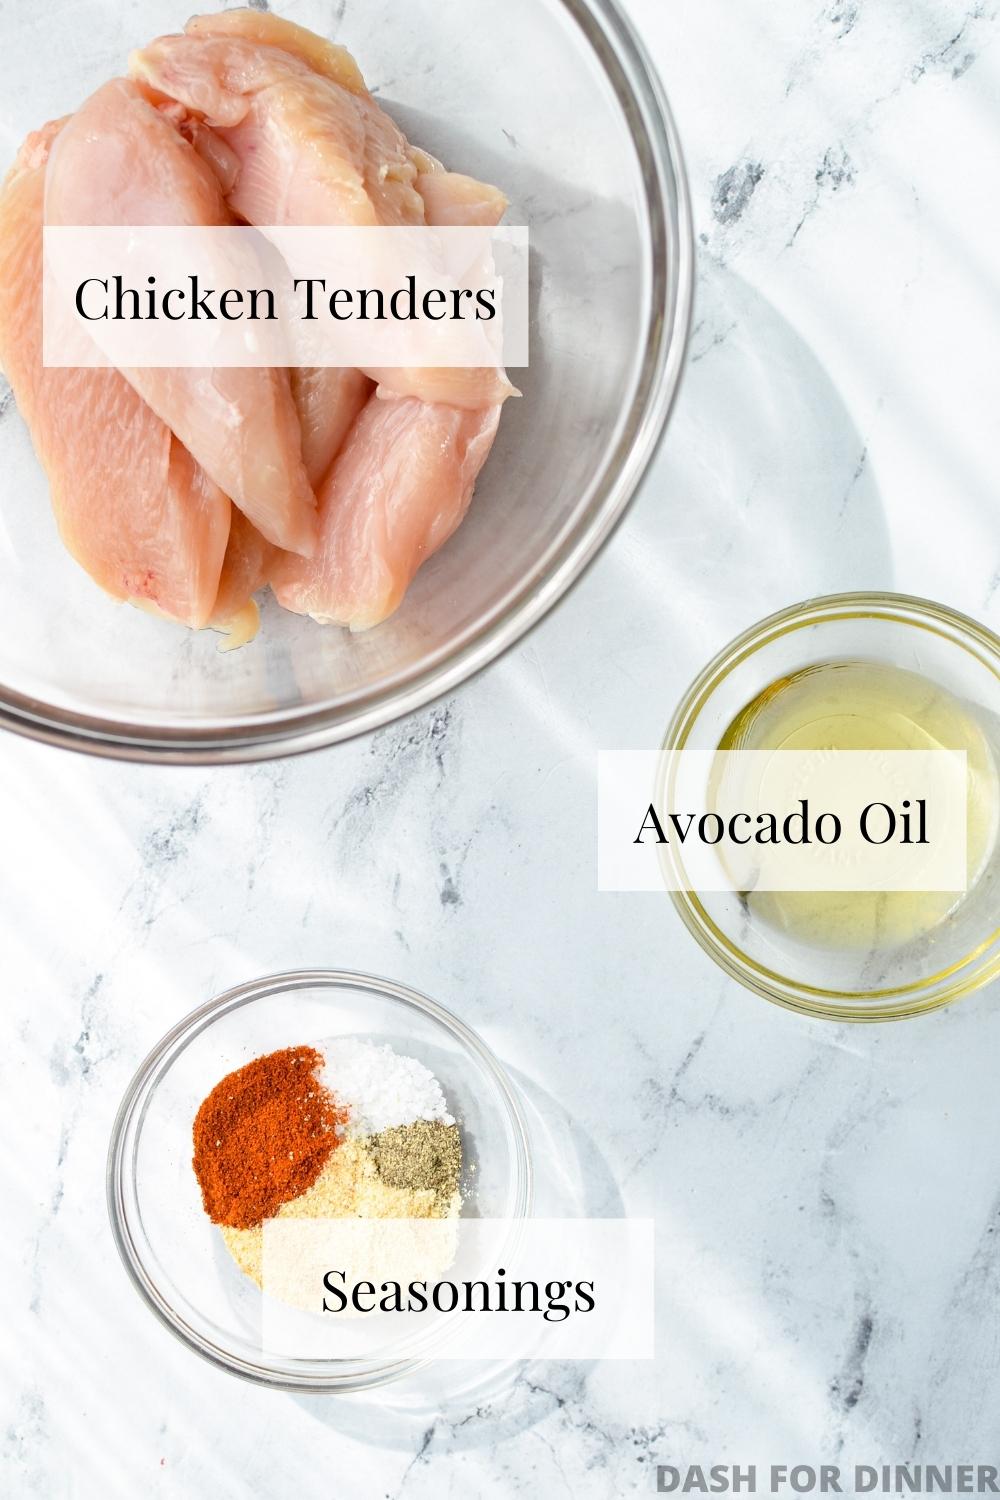 The ingredients needed to make air fryer chicken tenders: tenderloins, oil, and seasoning.